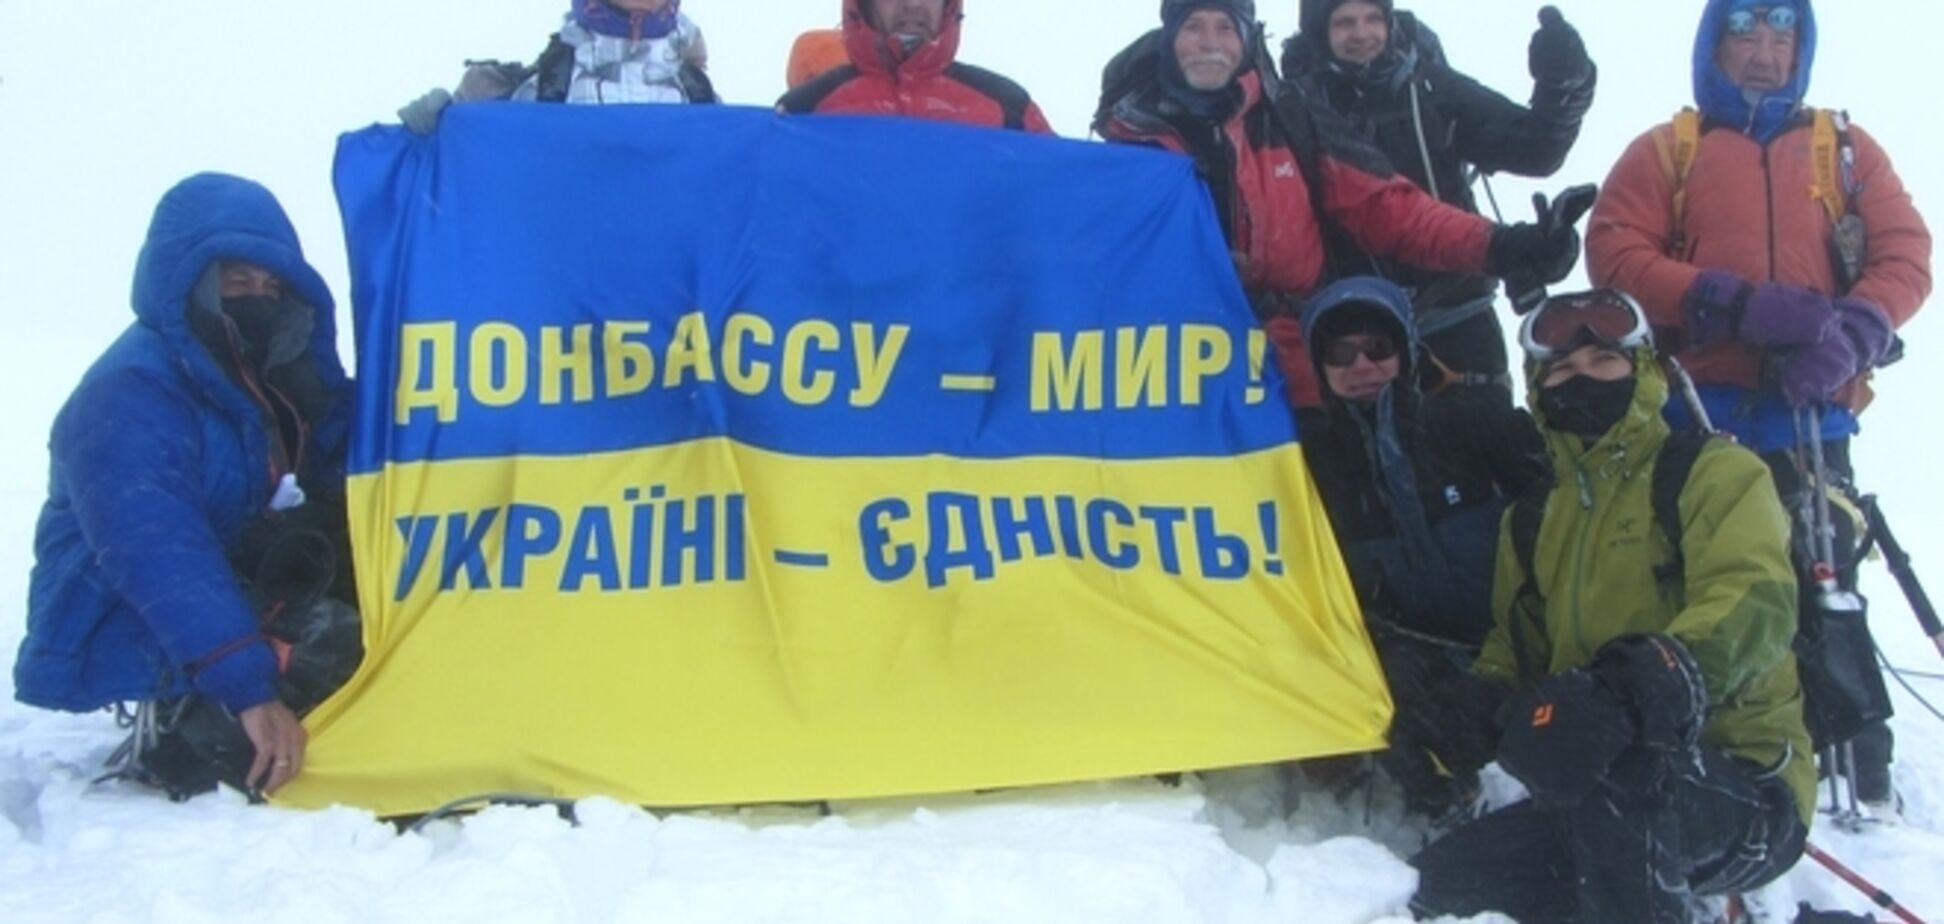 На самой высокой вершине Европы появился флаг 'Донбассу – мир, Украине – единство'